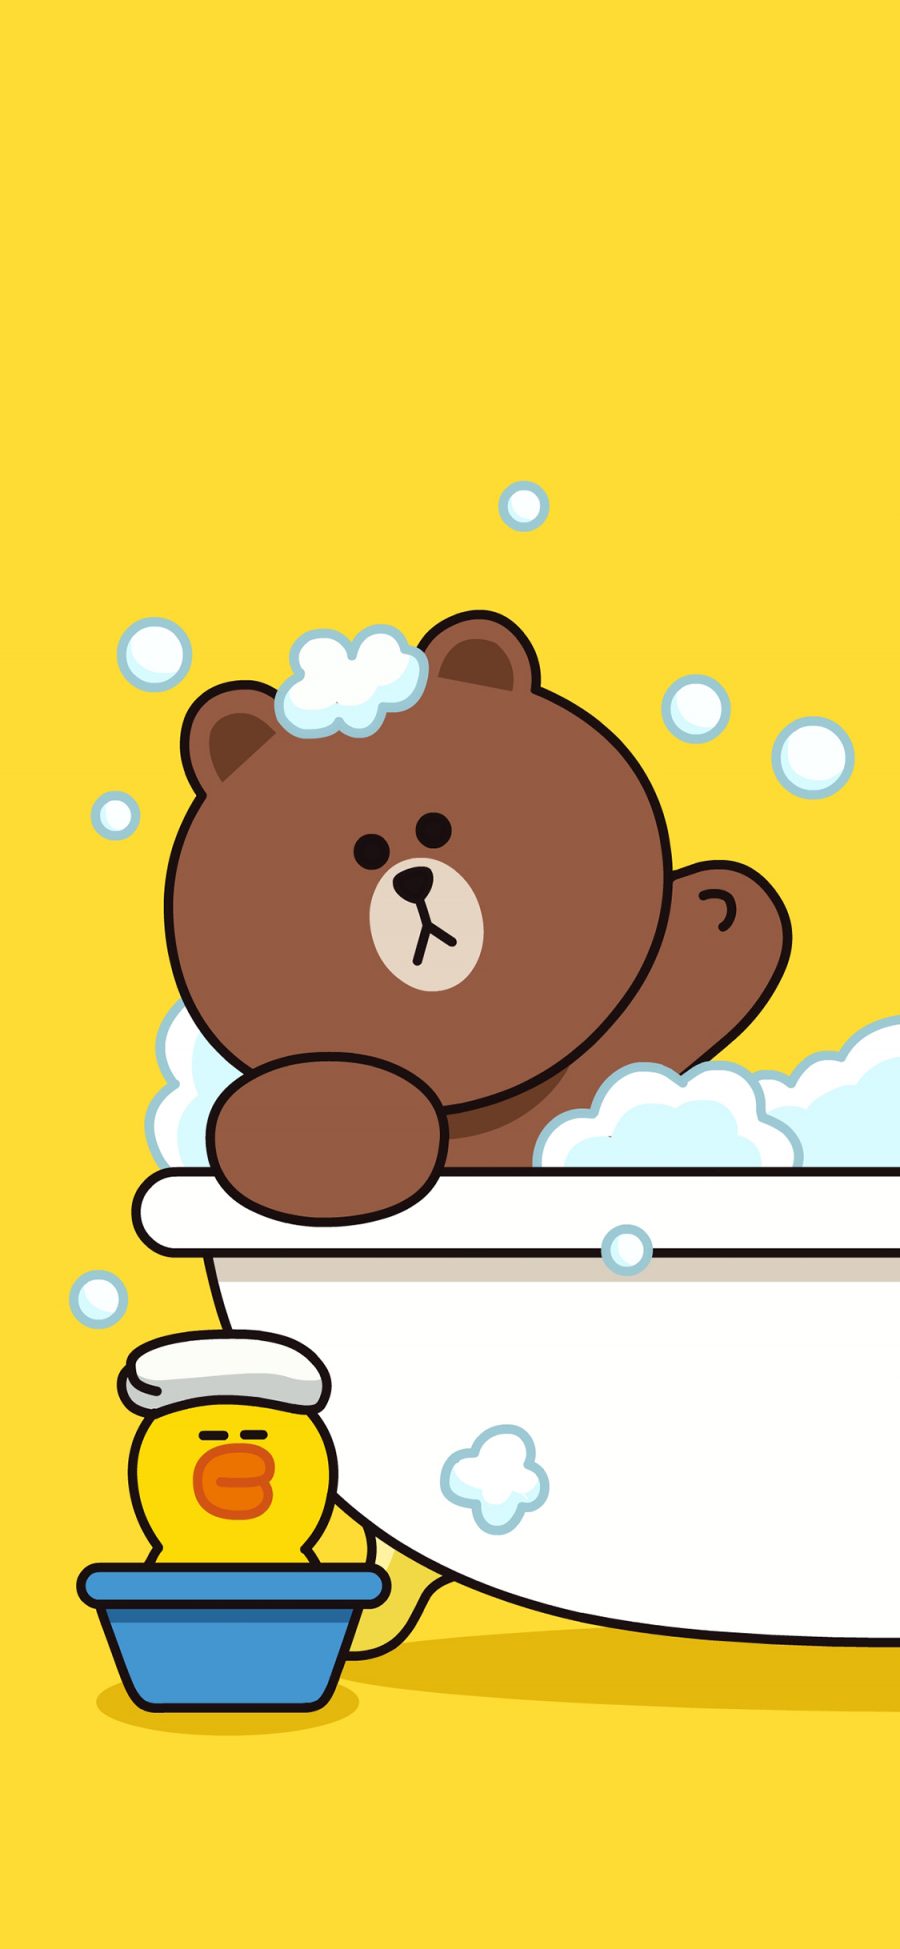 [2436×1125]布朗熊 line 萨莉鸡 浴缸 泡澡 可爱 卡通 苹果手机动漫壁纸图片